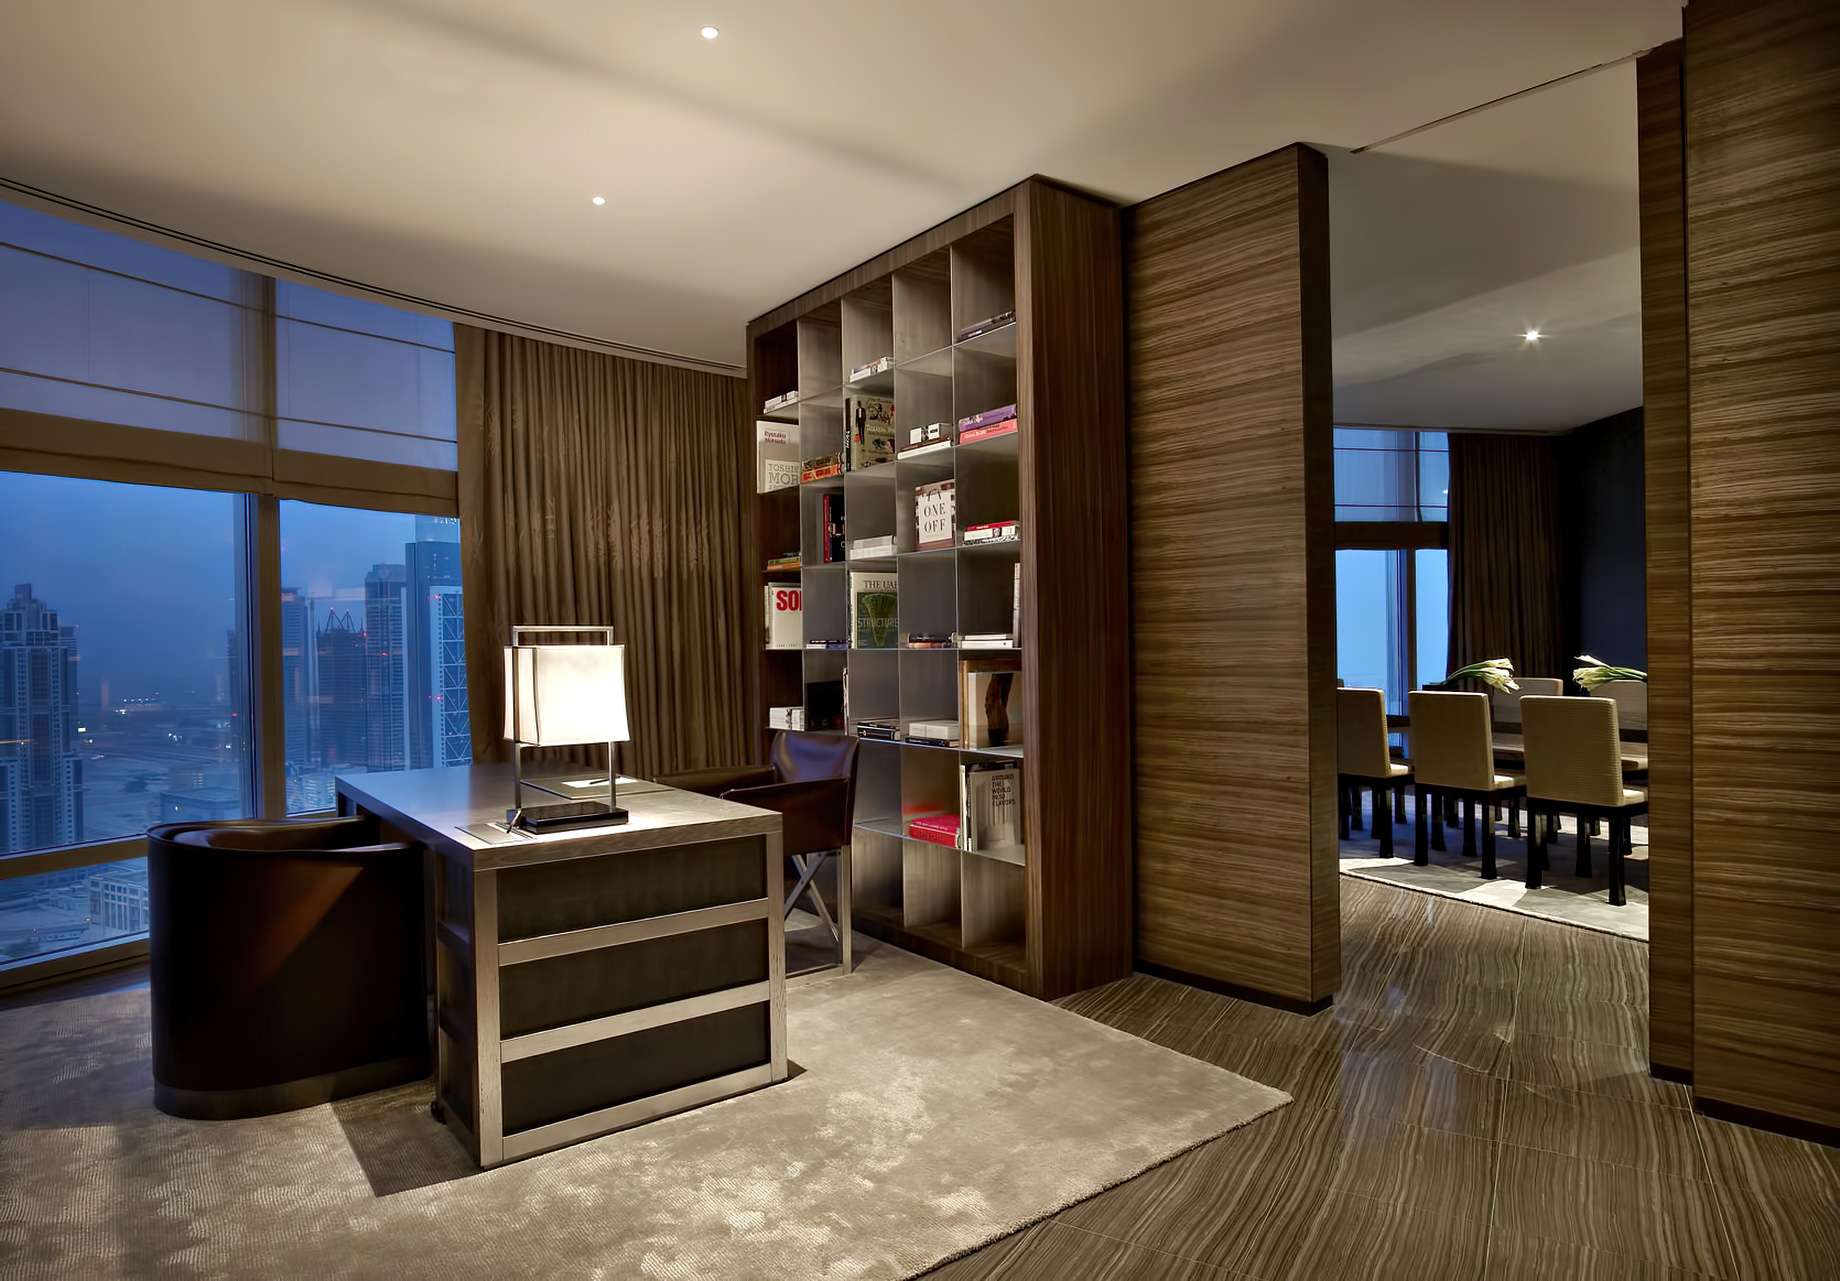 Armani Hotel Dubai – Burj Khalifa, Dubai, UAE – Armani Signature Interior Design